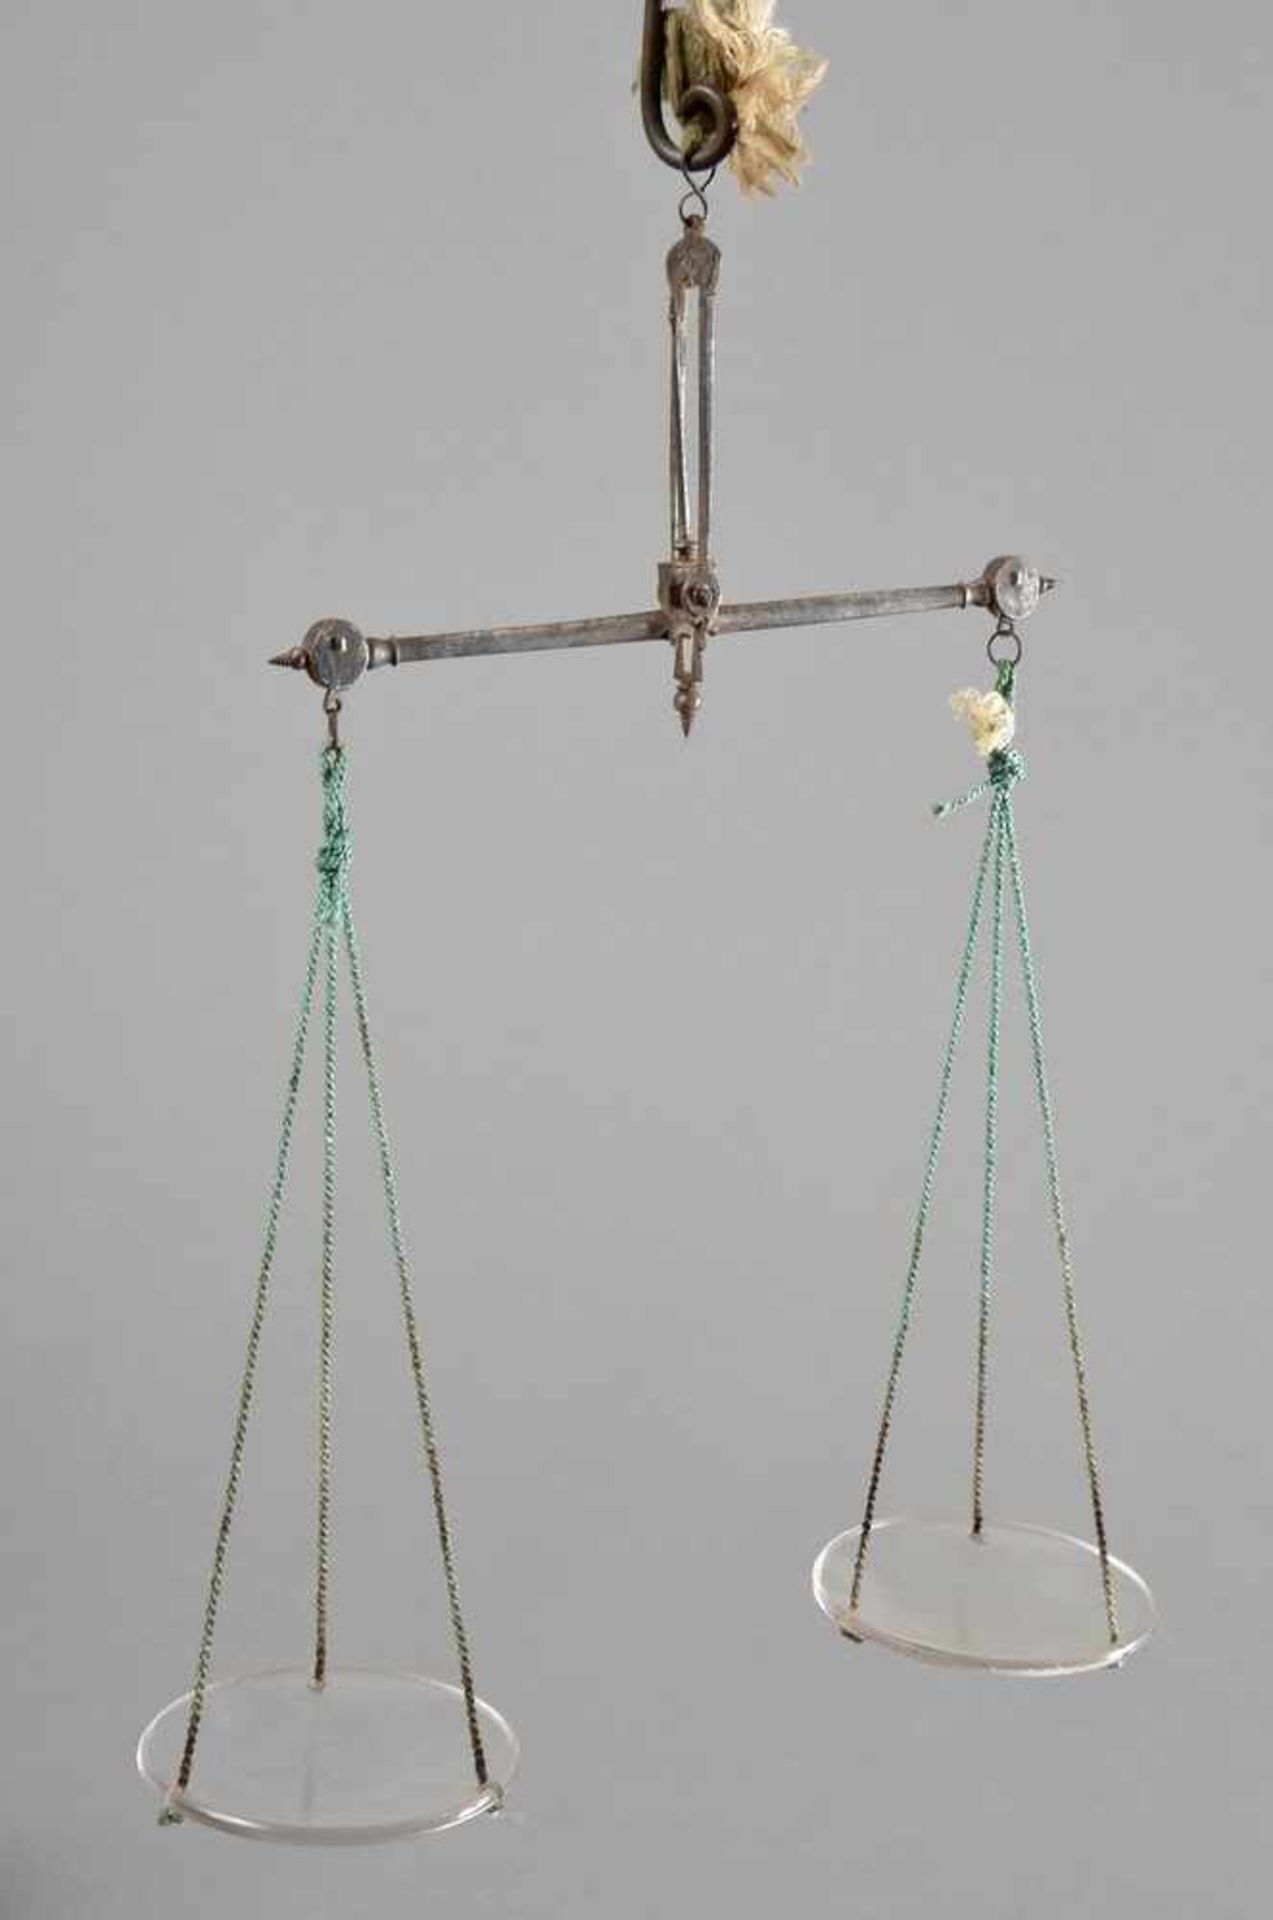 Poliertes Kirschholz Kästchen, darin Waage mit Glaseinsätzen und diverse Gewichte, 17,5x8,5cm,